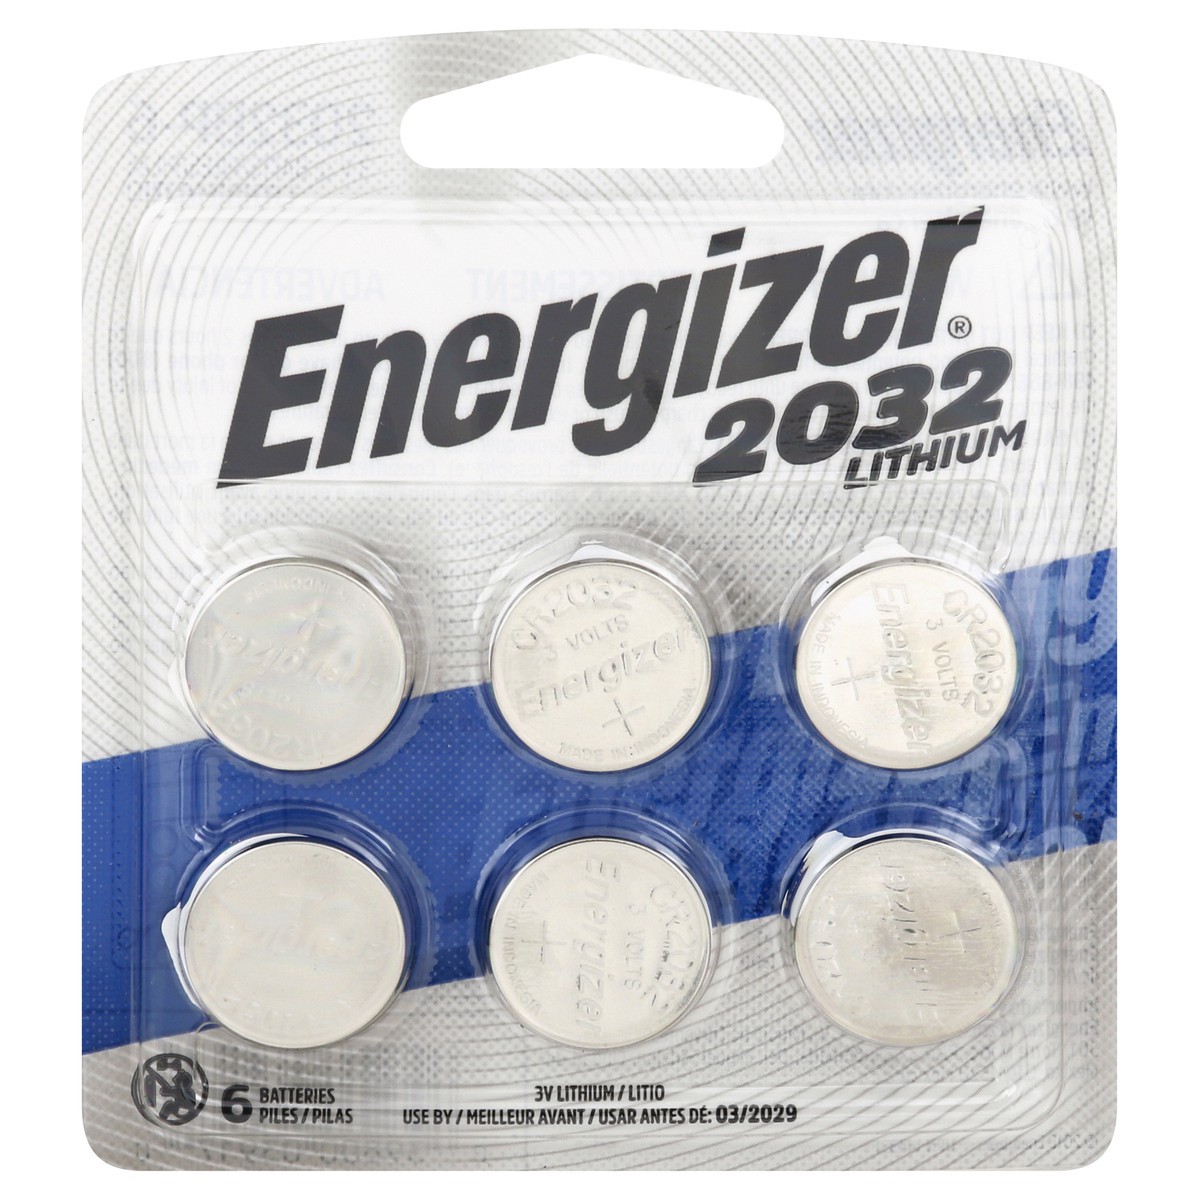 slide 1 of 8, Energizer 2032 Lithium 3V Batteries, 6 ct